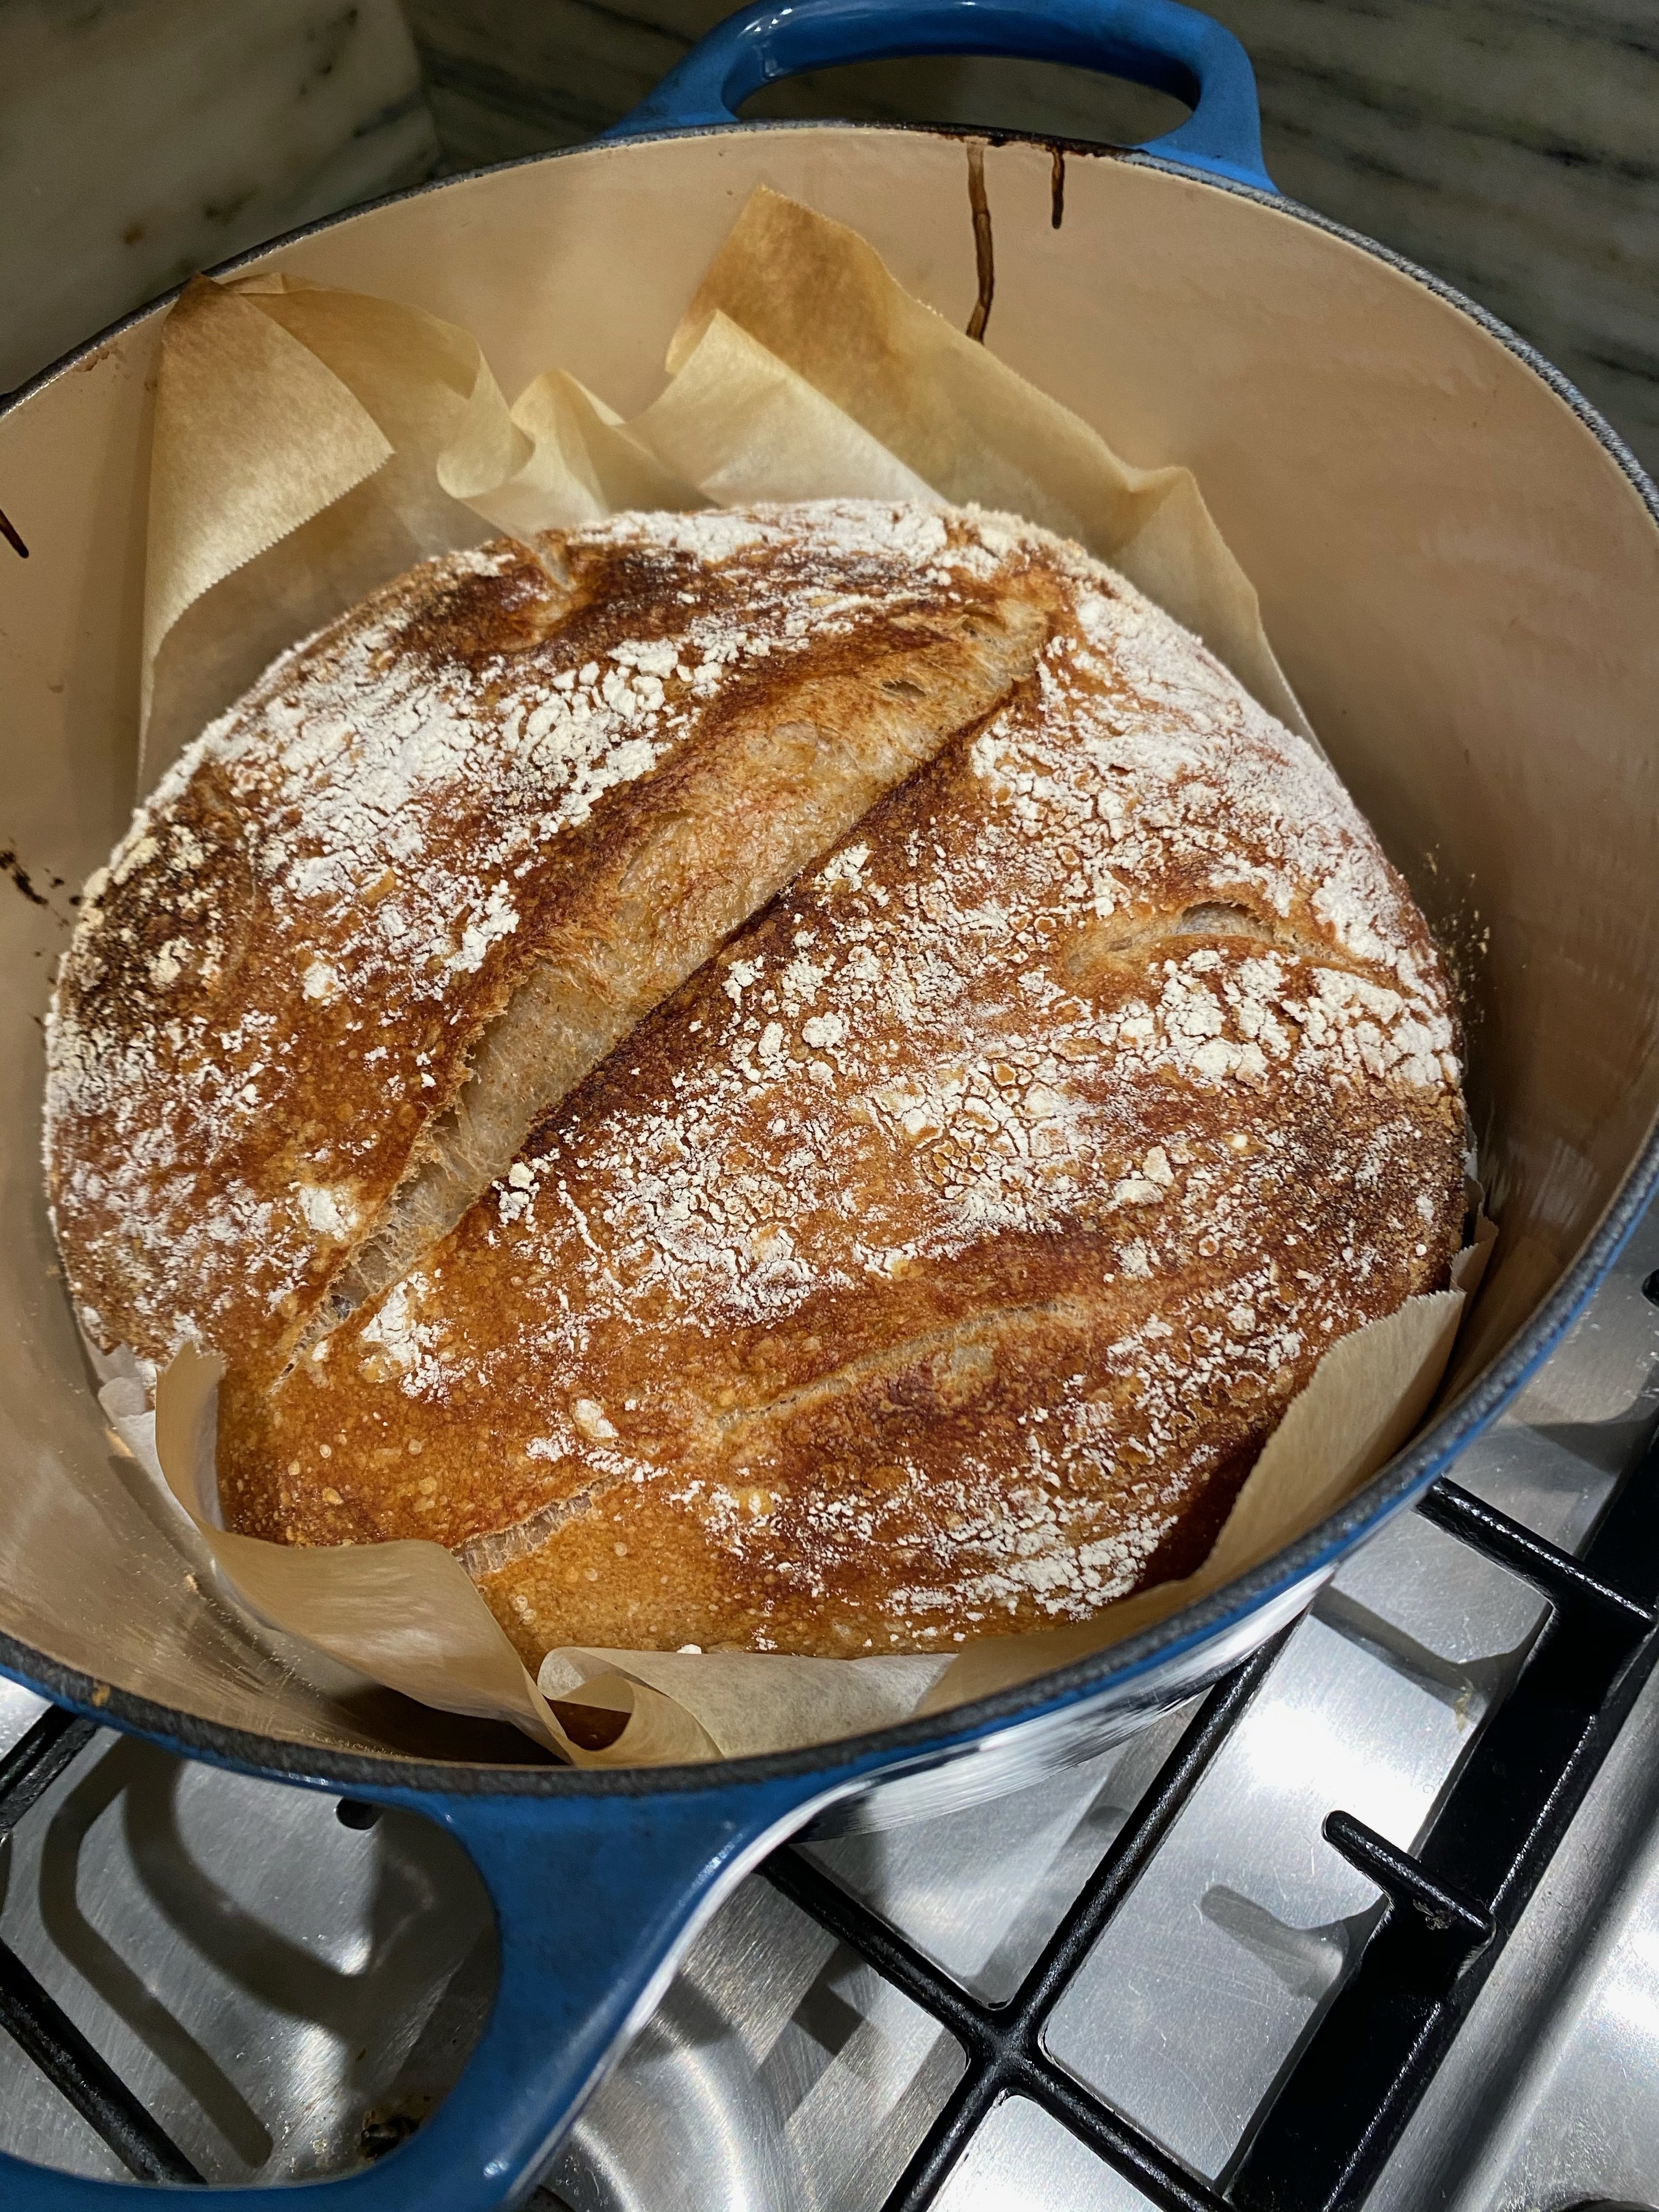 荷兰烤箱中的新鲜烤面包。